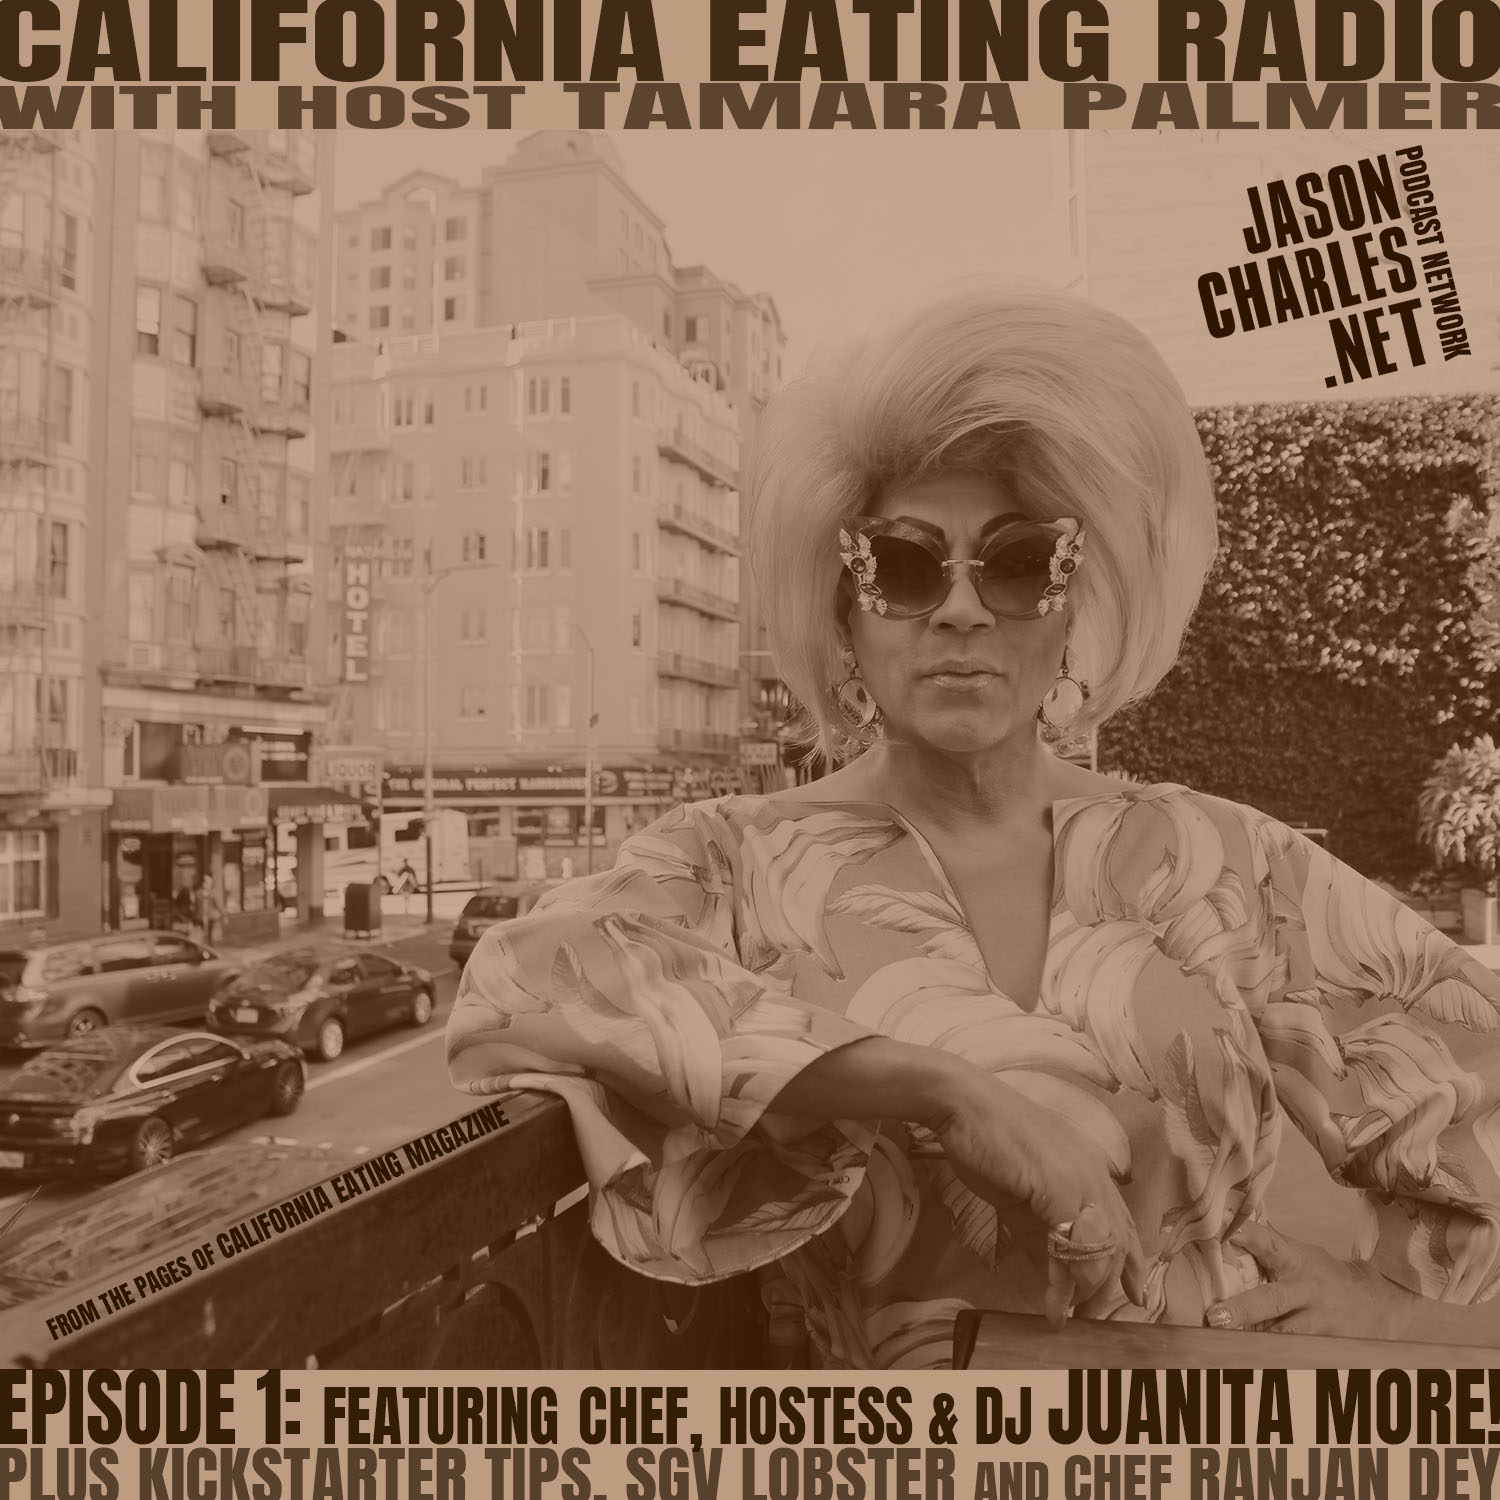 CALIFORNIA EATING RADIO with Tamara Palmer Episode 1